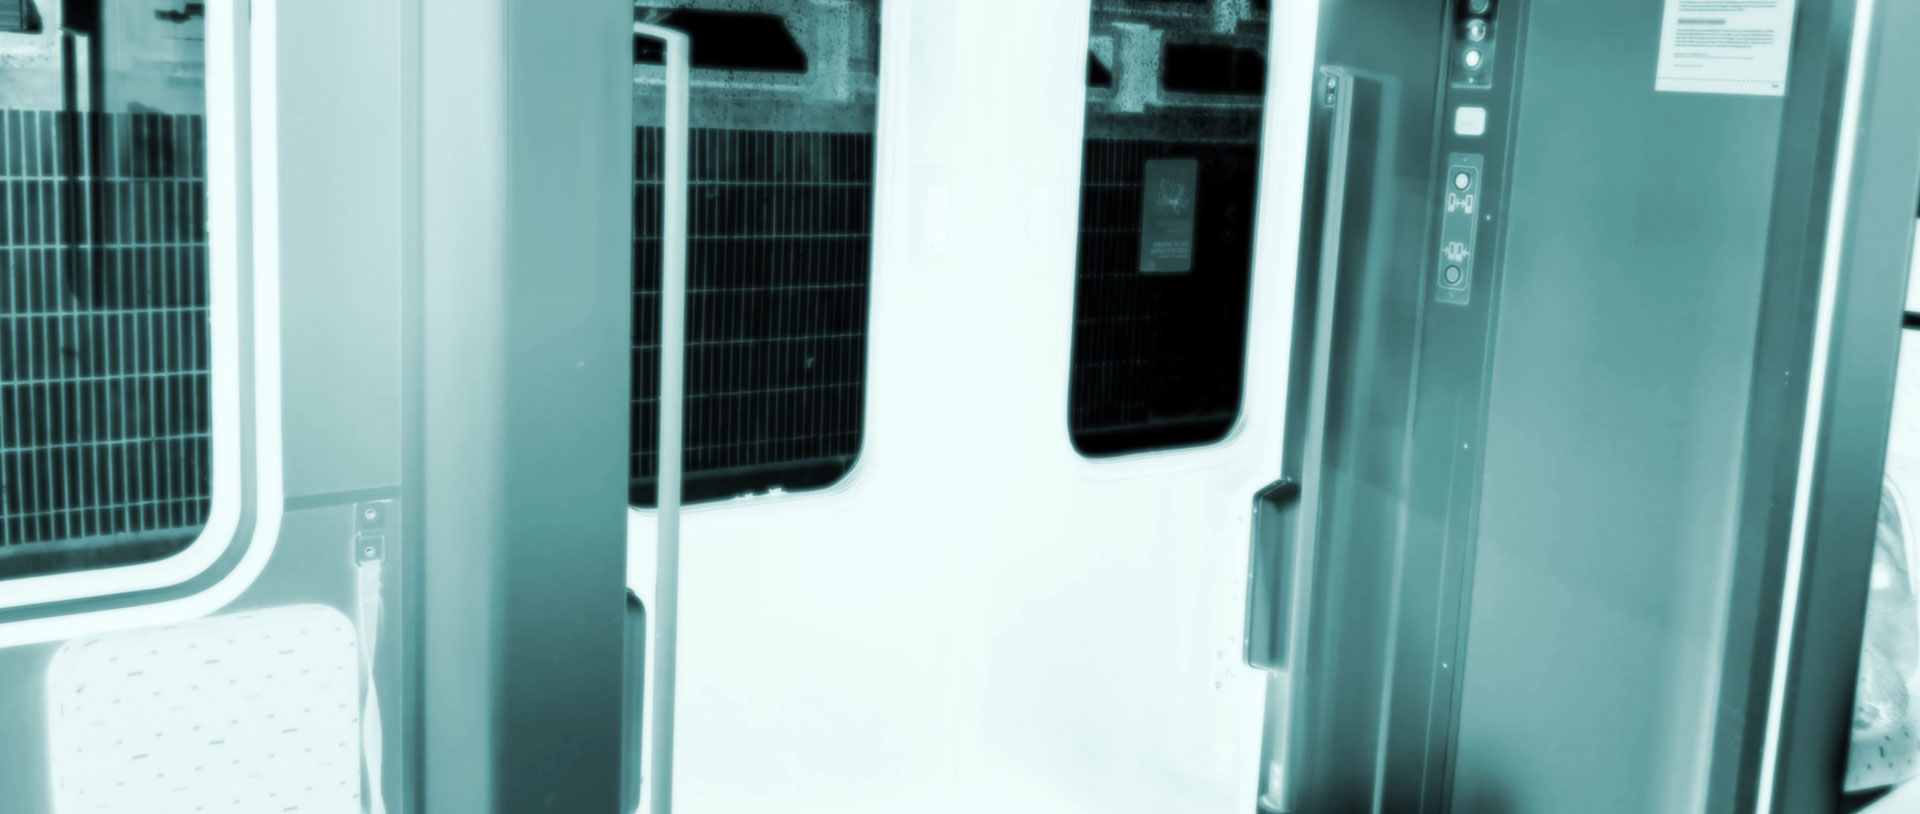 Train doors